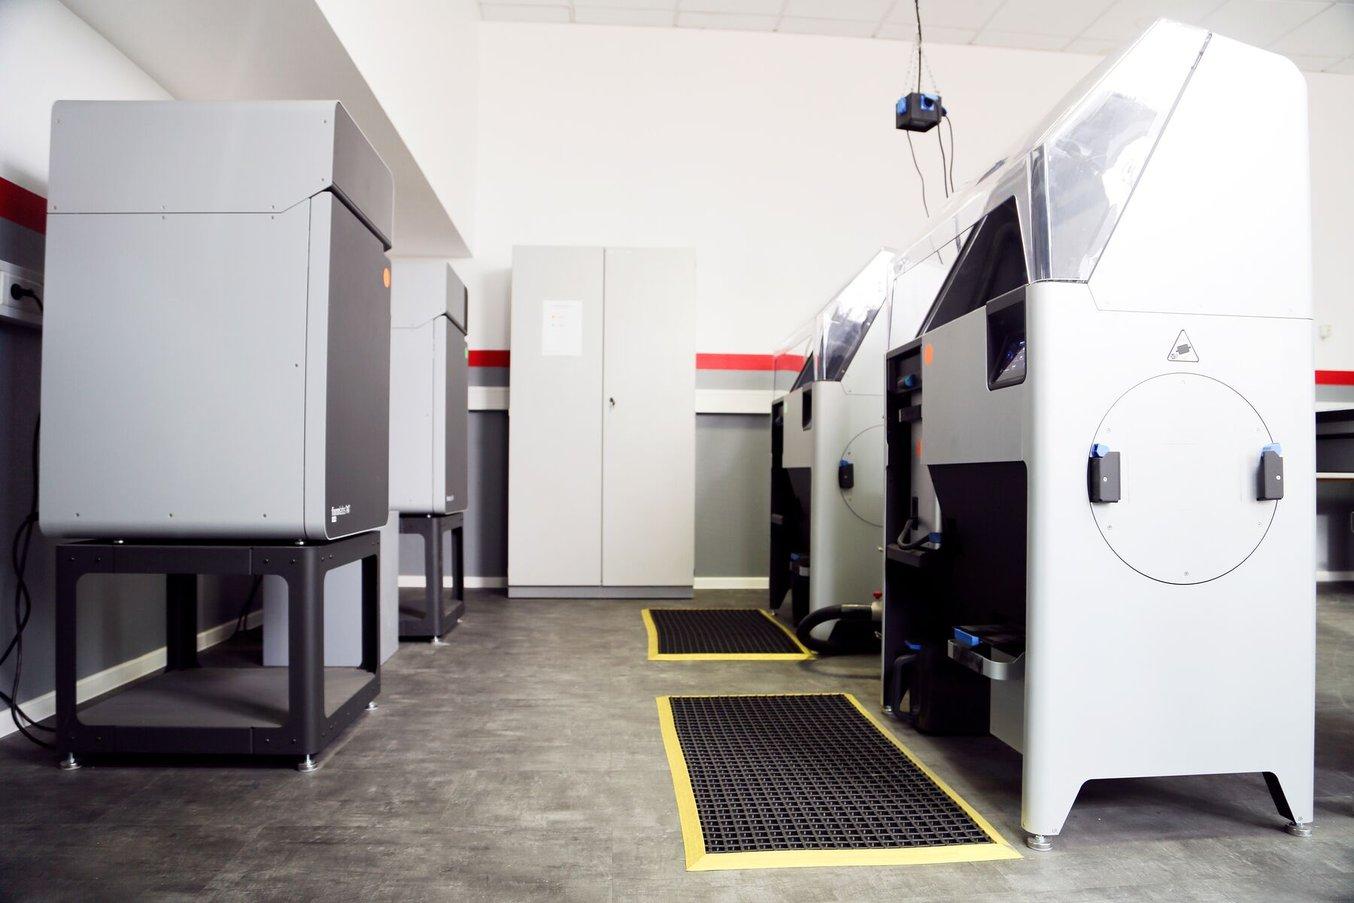 Il laboratorio di stampa 3D di Neumünster conta dieci stampanti 3D, tra cui due stampanti SLS della serie Fuse.